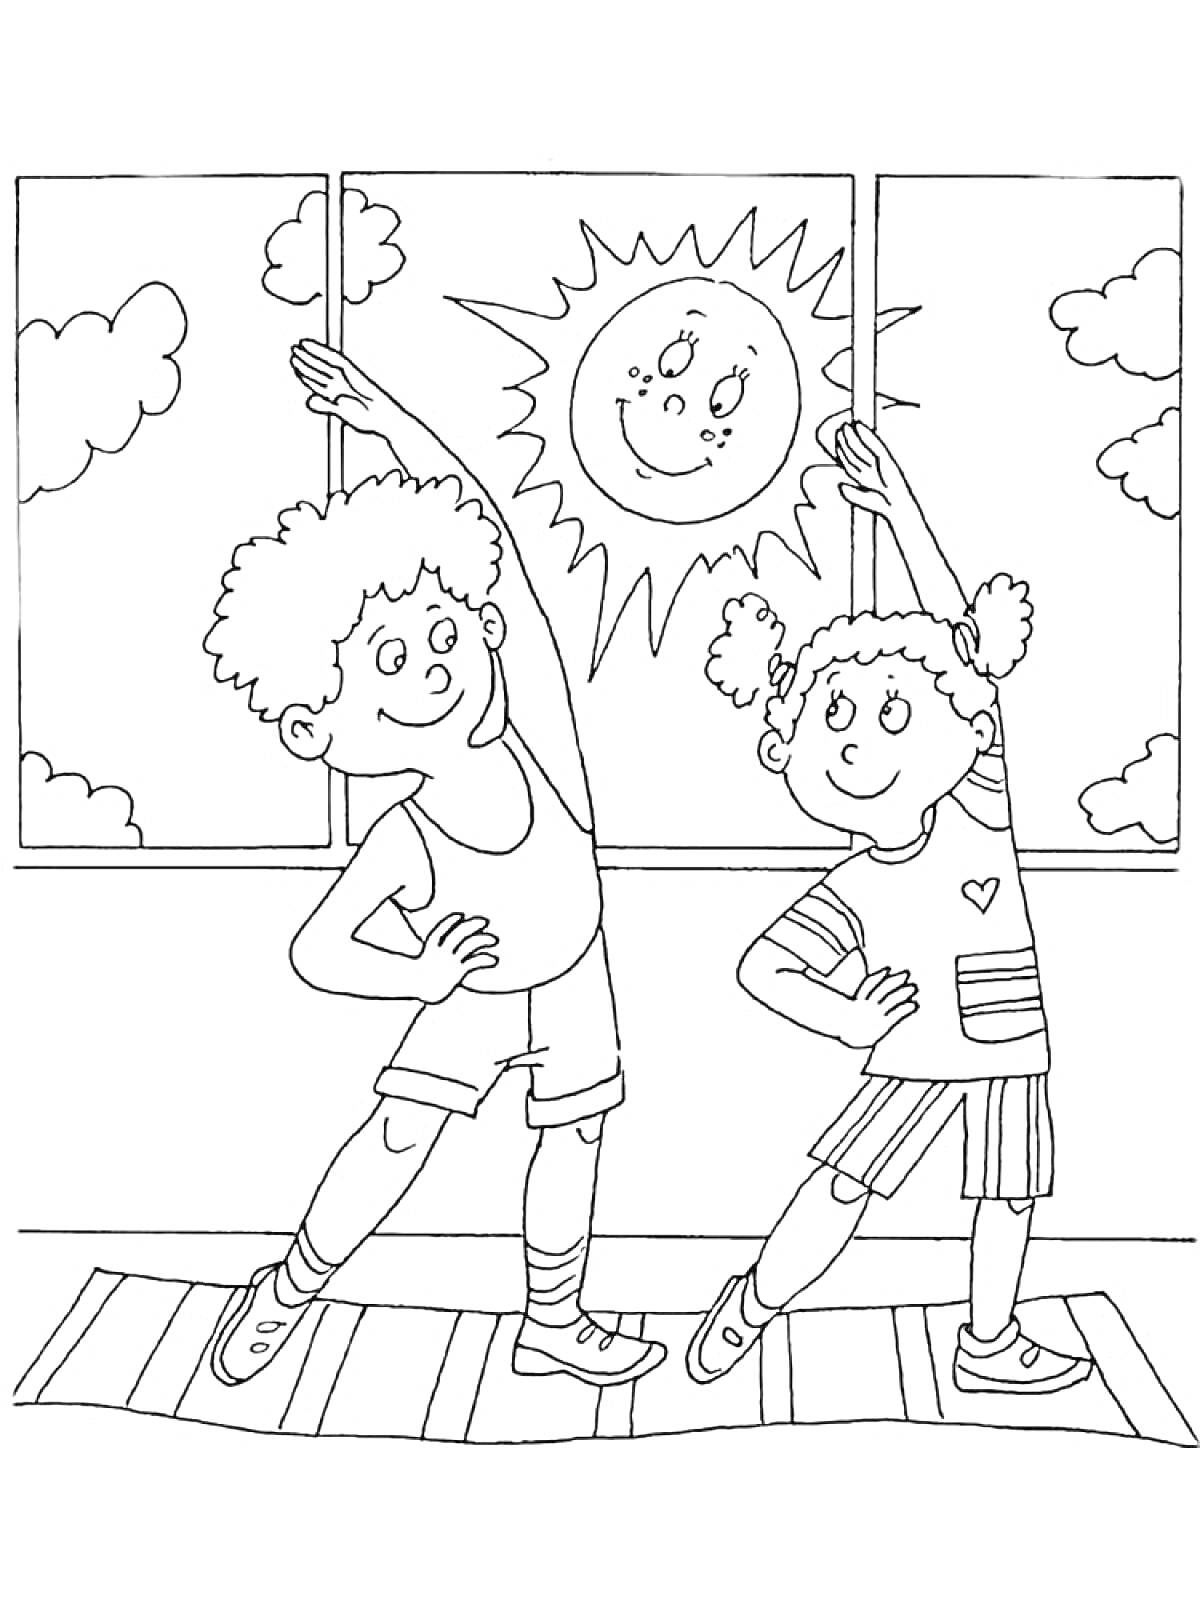 Раскраска дети делают утреннюю зарядку у окна, на улице солнце и облака